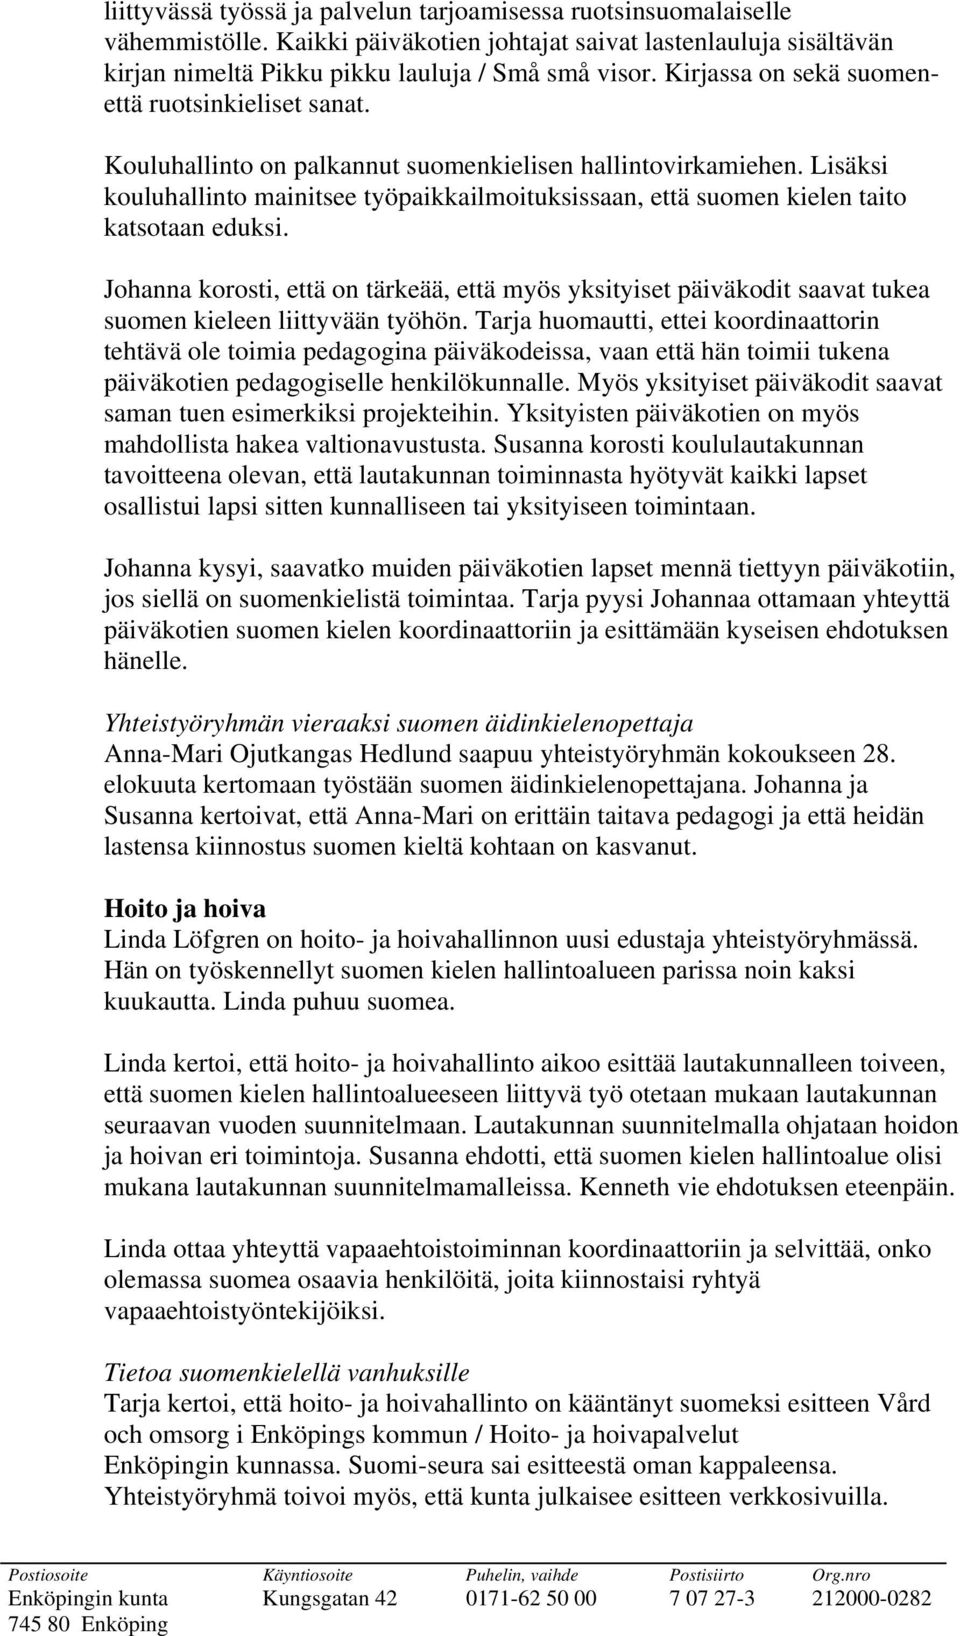 Lisäksi kouluhallinto mainitsee työpaikkailmoituksissaan, että suomen kielen taito katsotaan eduksi.